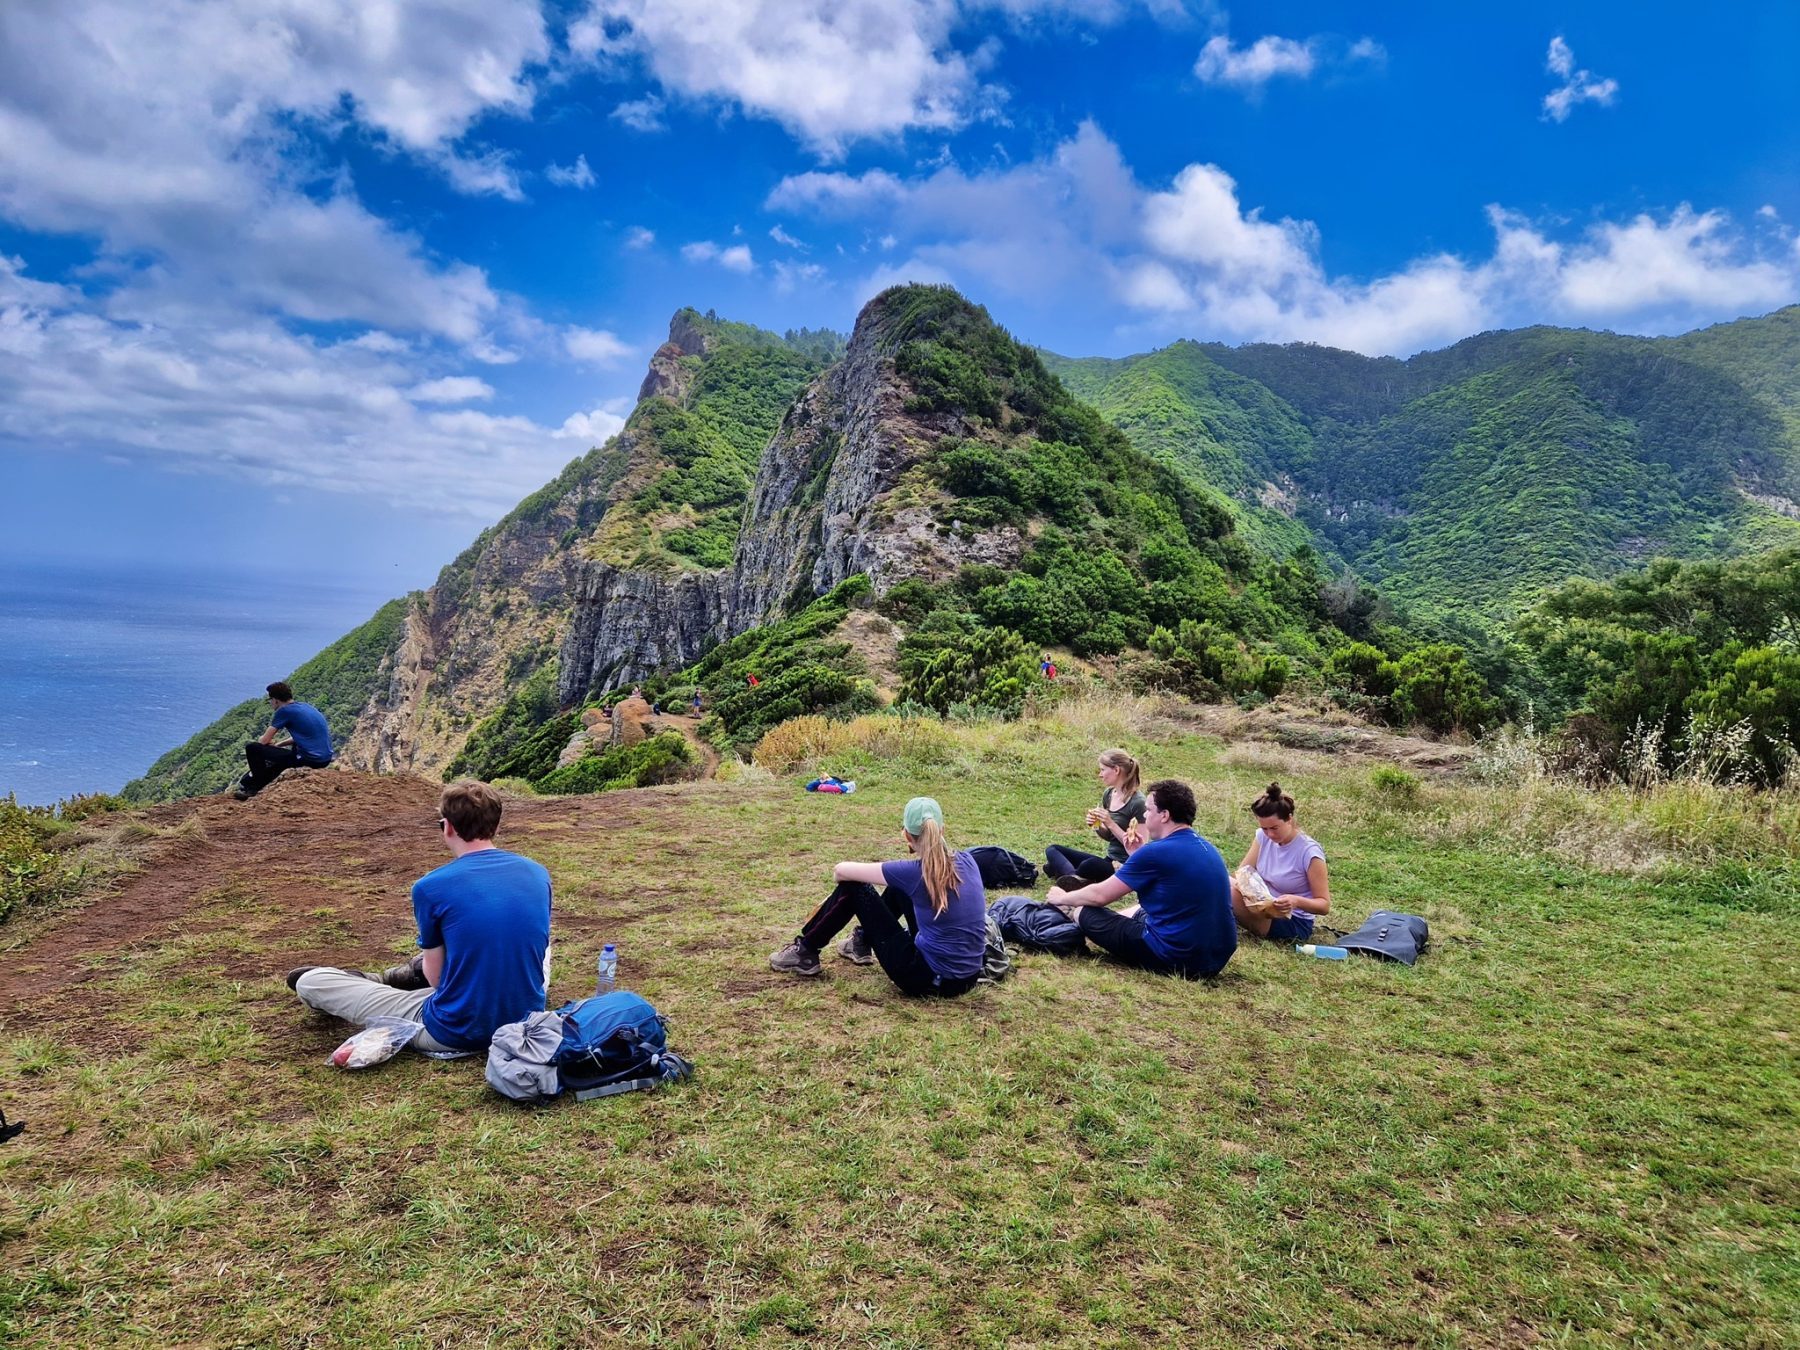 De mooiste groepswandelreizen in Europa zoals deze op Madeira? Je vindt ze hier.